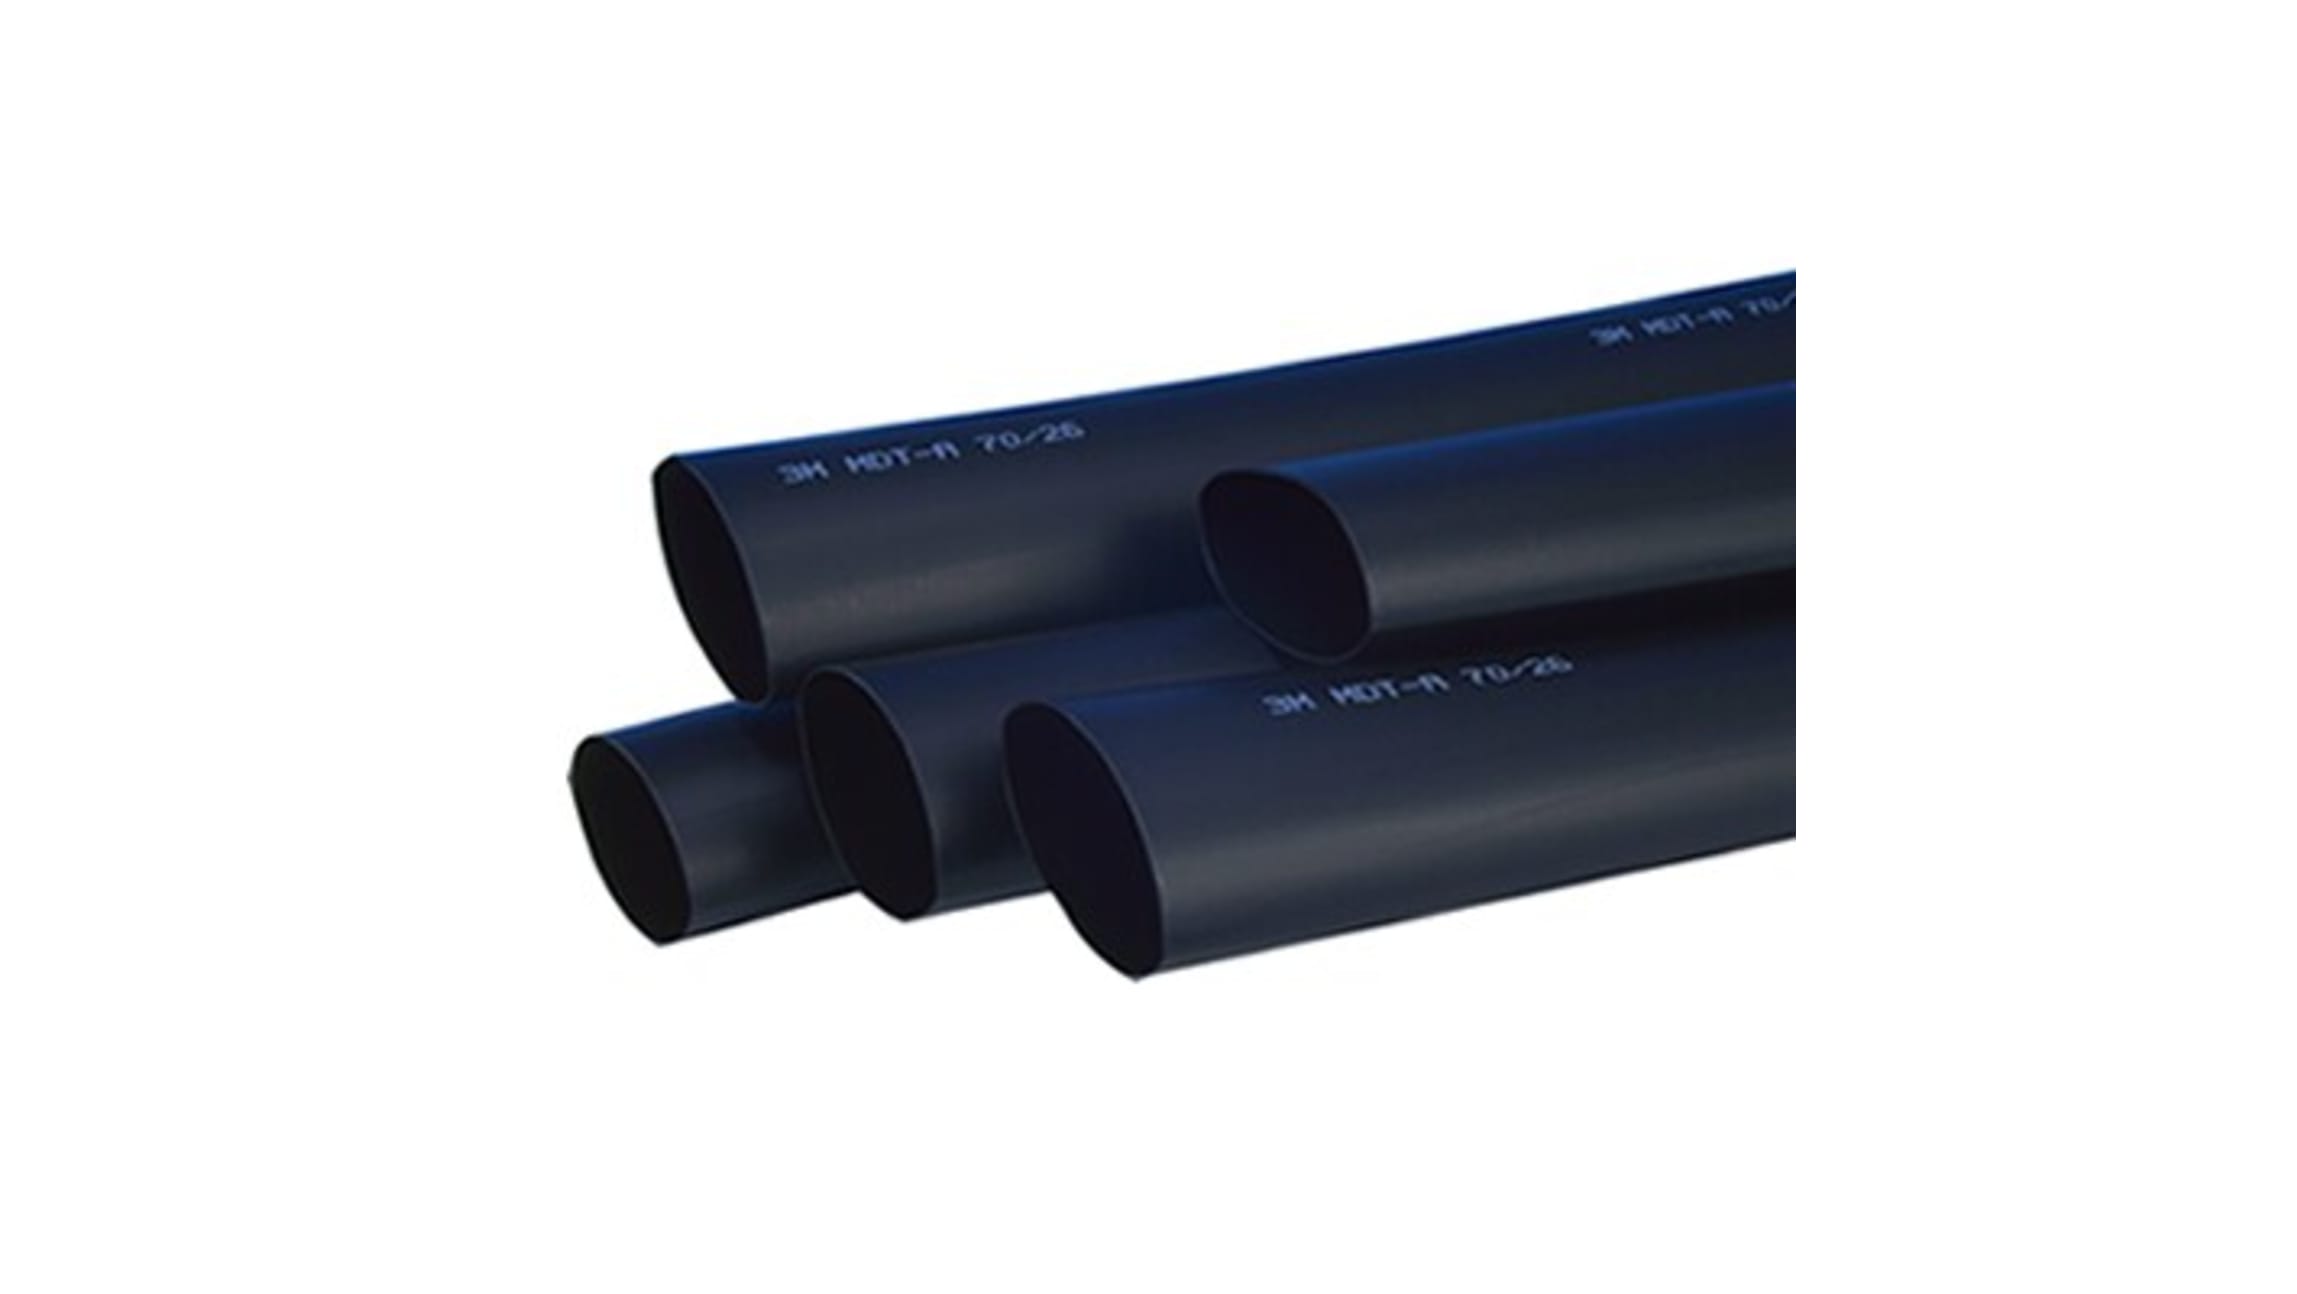  IIVVERR Tubo termoretráctil de poliolefina negro para  reparación de cables de 65.6 ft de largo 0.157 in de diámetro interior de  poliolefina negro para reparación de cables : Todo lo demás